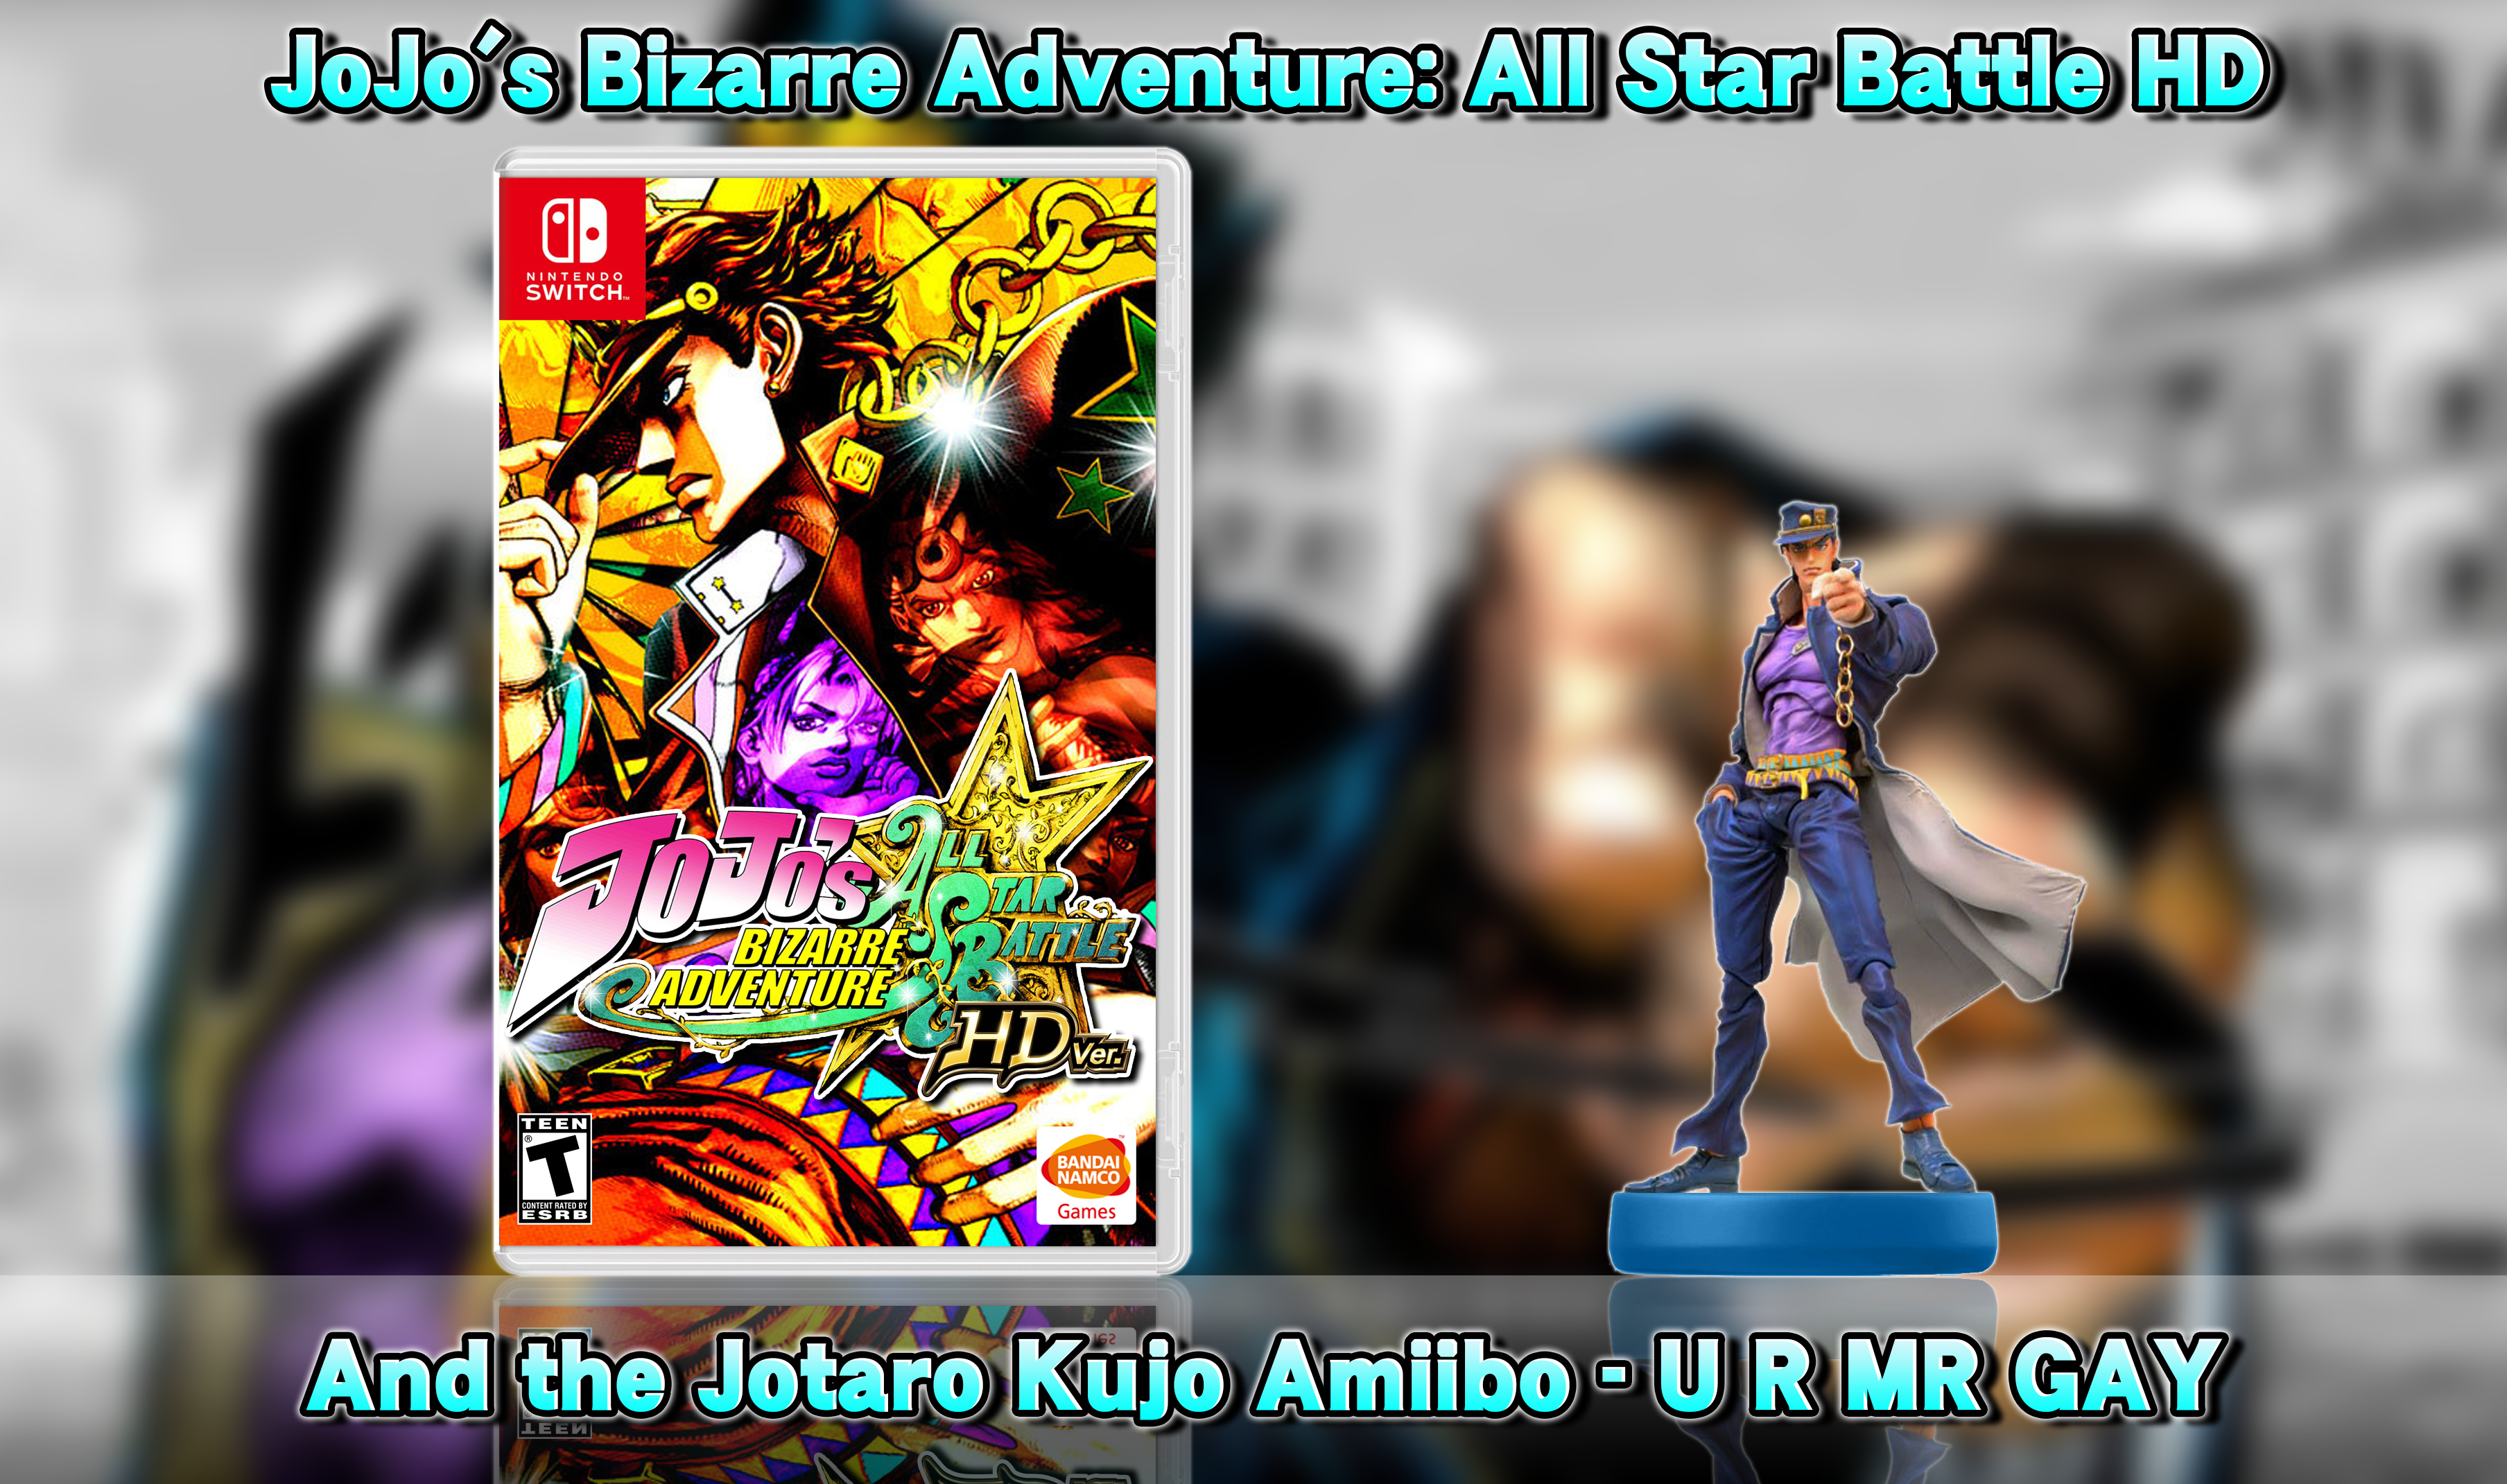 JoJo's Bizarre Adventure: All Star Battle HD box cover